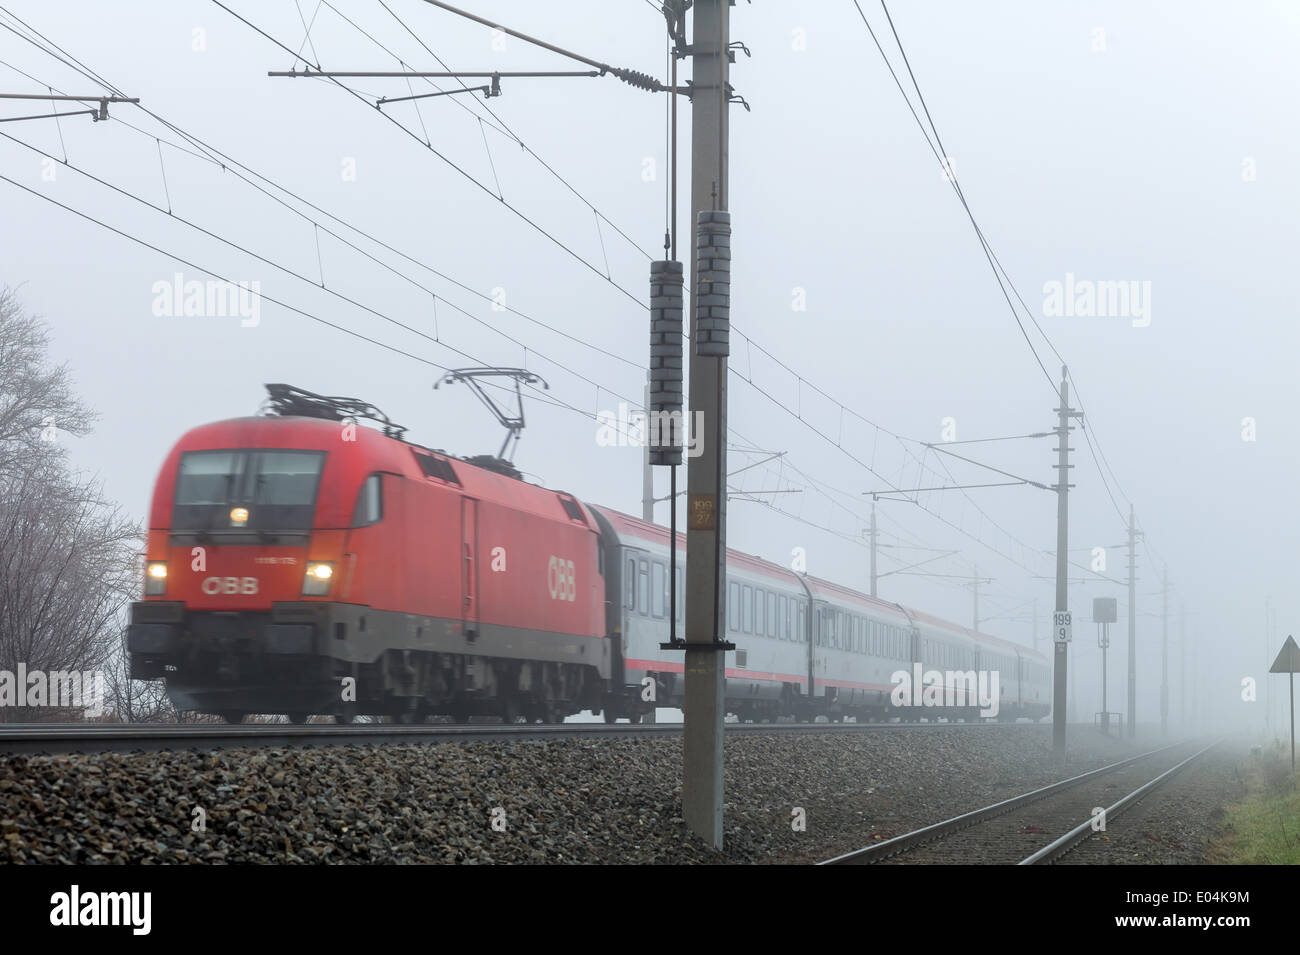 A railroad engine by a stopping train of the ?BB in the fog., Eine Lokomotive mit einem Personenzug der OeBB im Nebel. Stock Photo